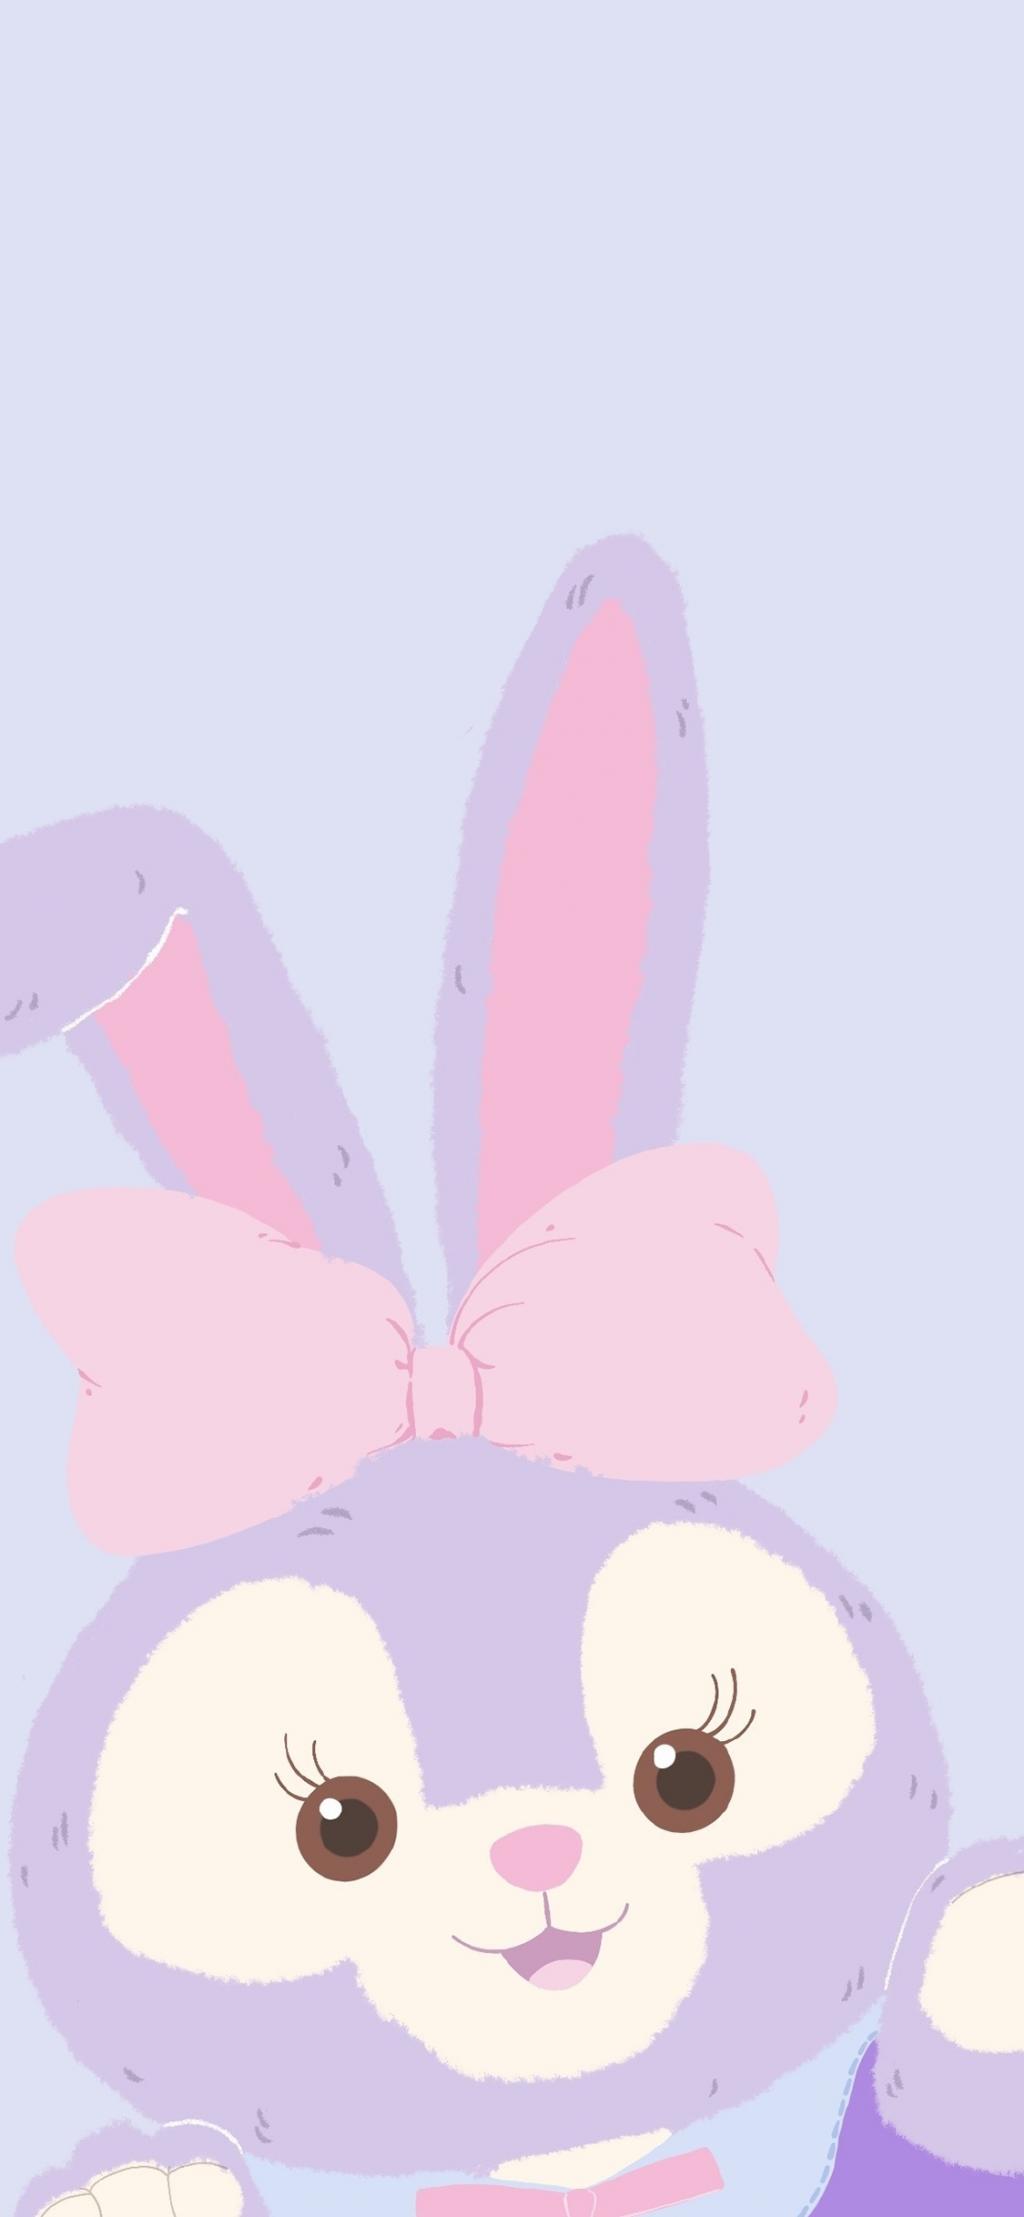 小兔子星黛露手机壁纸 高清图片 简约 纯色壁纸